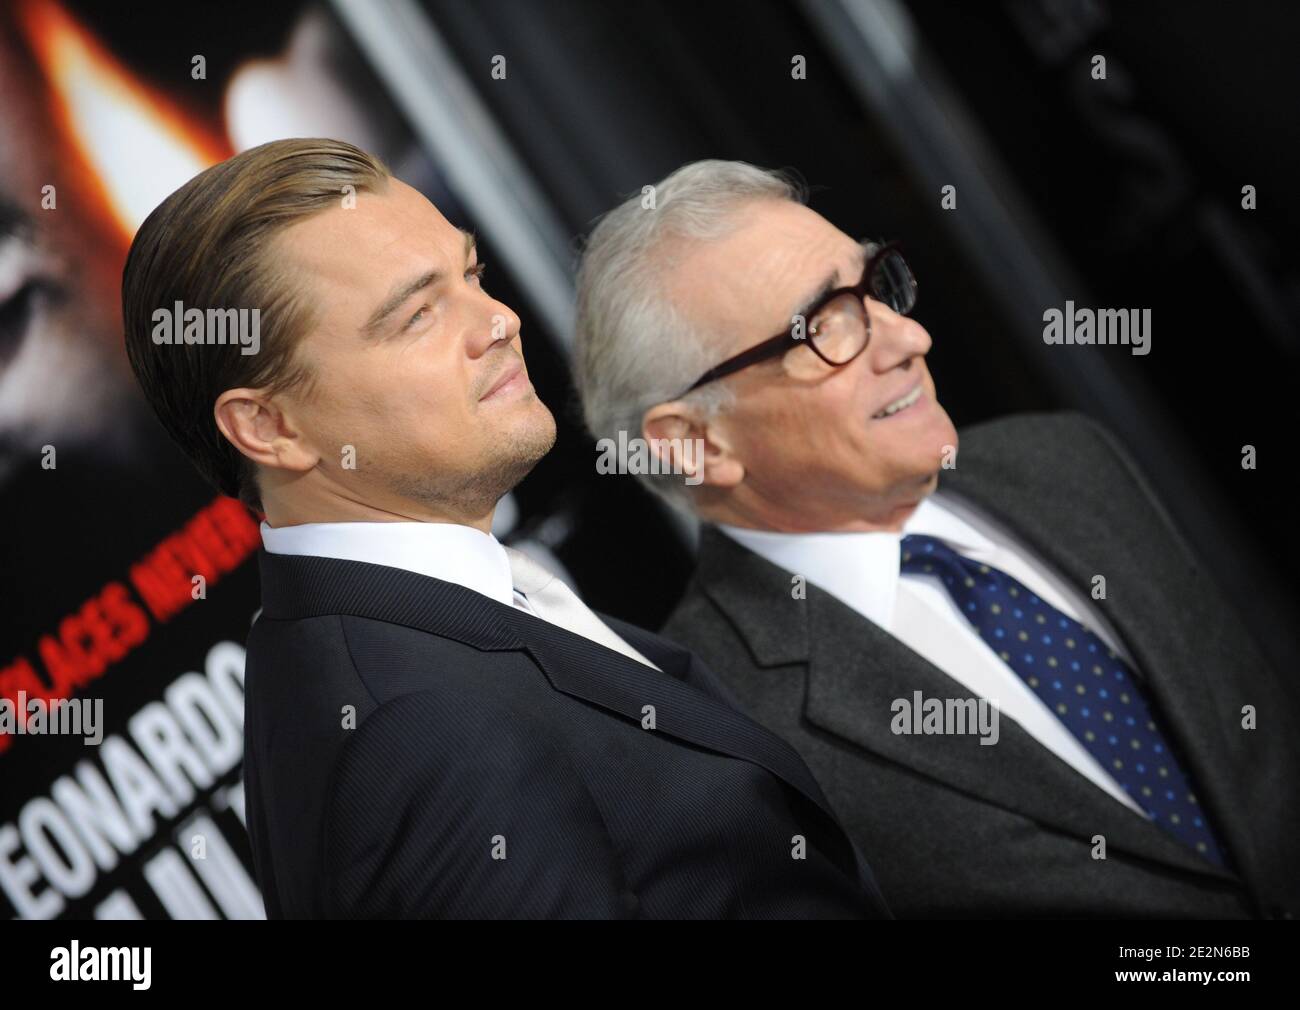 Leonardo DiCaprio e Martin Scorsese partecipano alla prima di Shutter Island nel Teatro Ziegfeld di New York, NY, USA il 17 febbraio 2010. Foto di Mehdi Taamallah/ABACAPRESS.COM (nella foto: Leonardo di Caprio, Martin Scorsese) Foto Stock